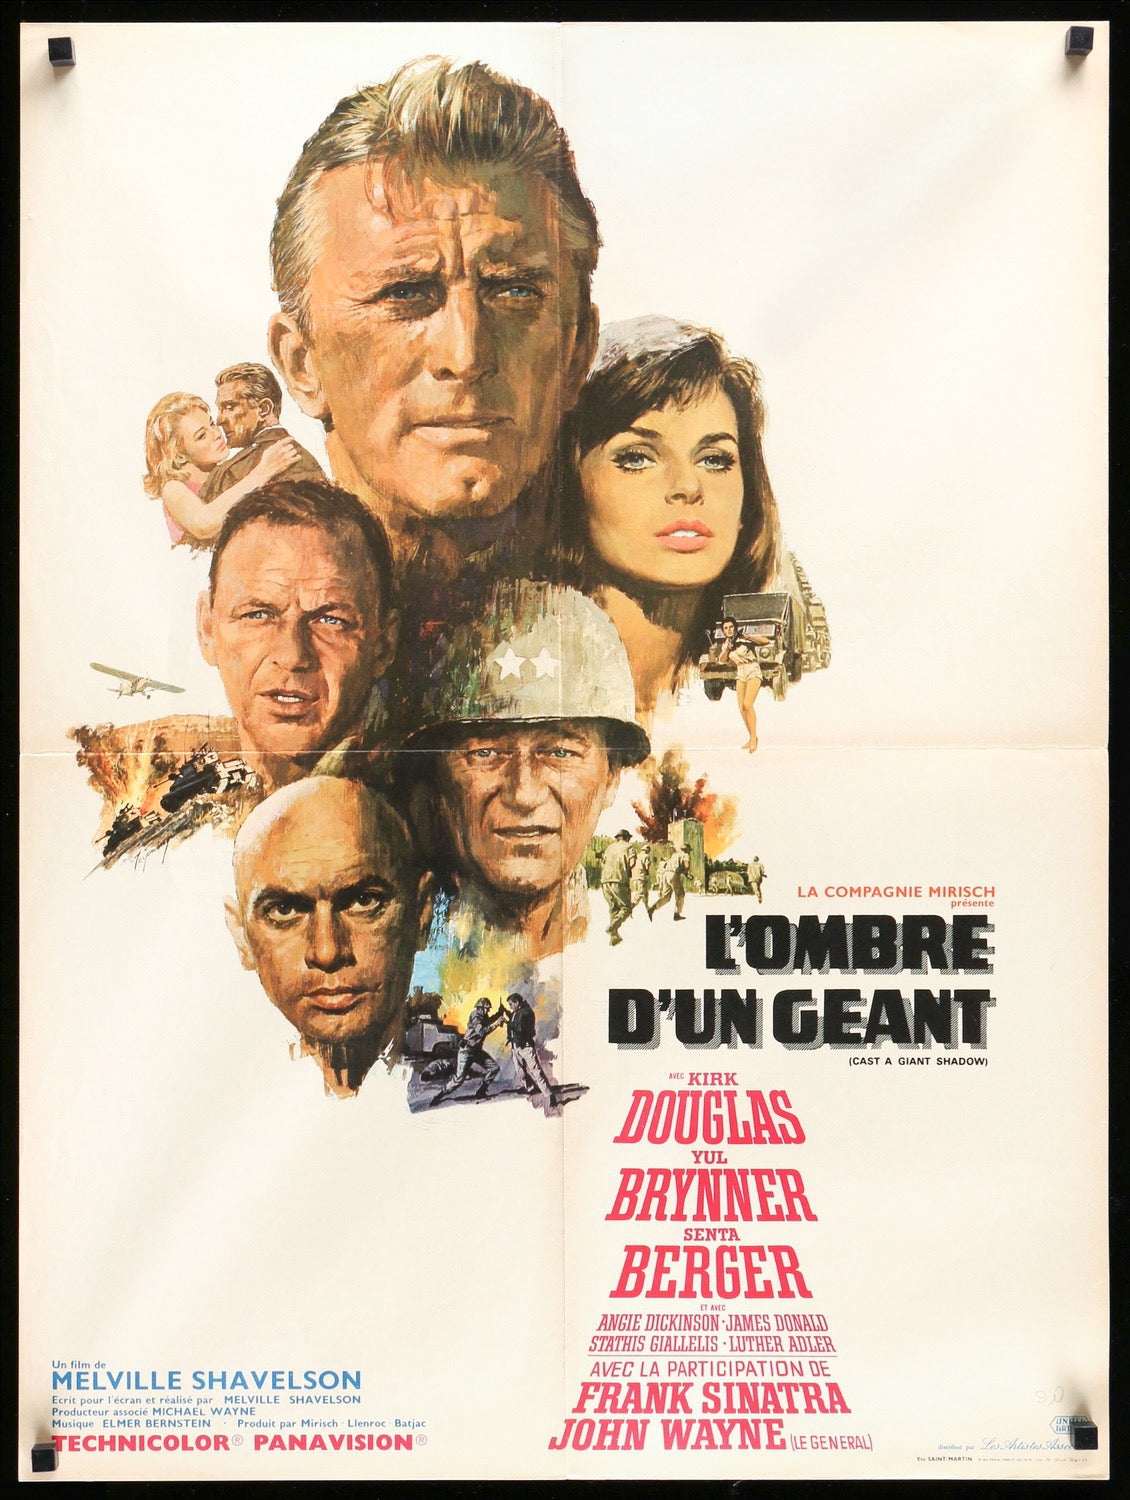 Cast a Giant Shadow (1966) original movie poster for sale at Original Film Art